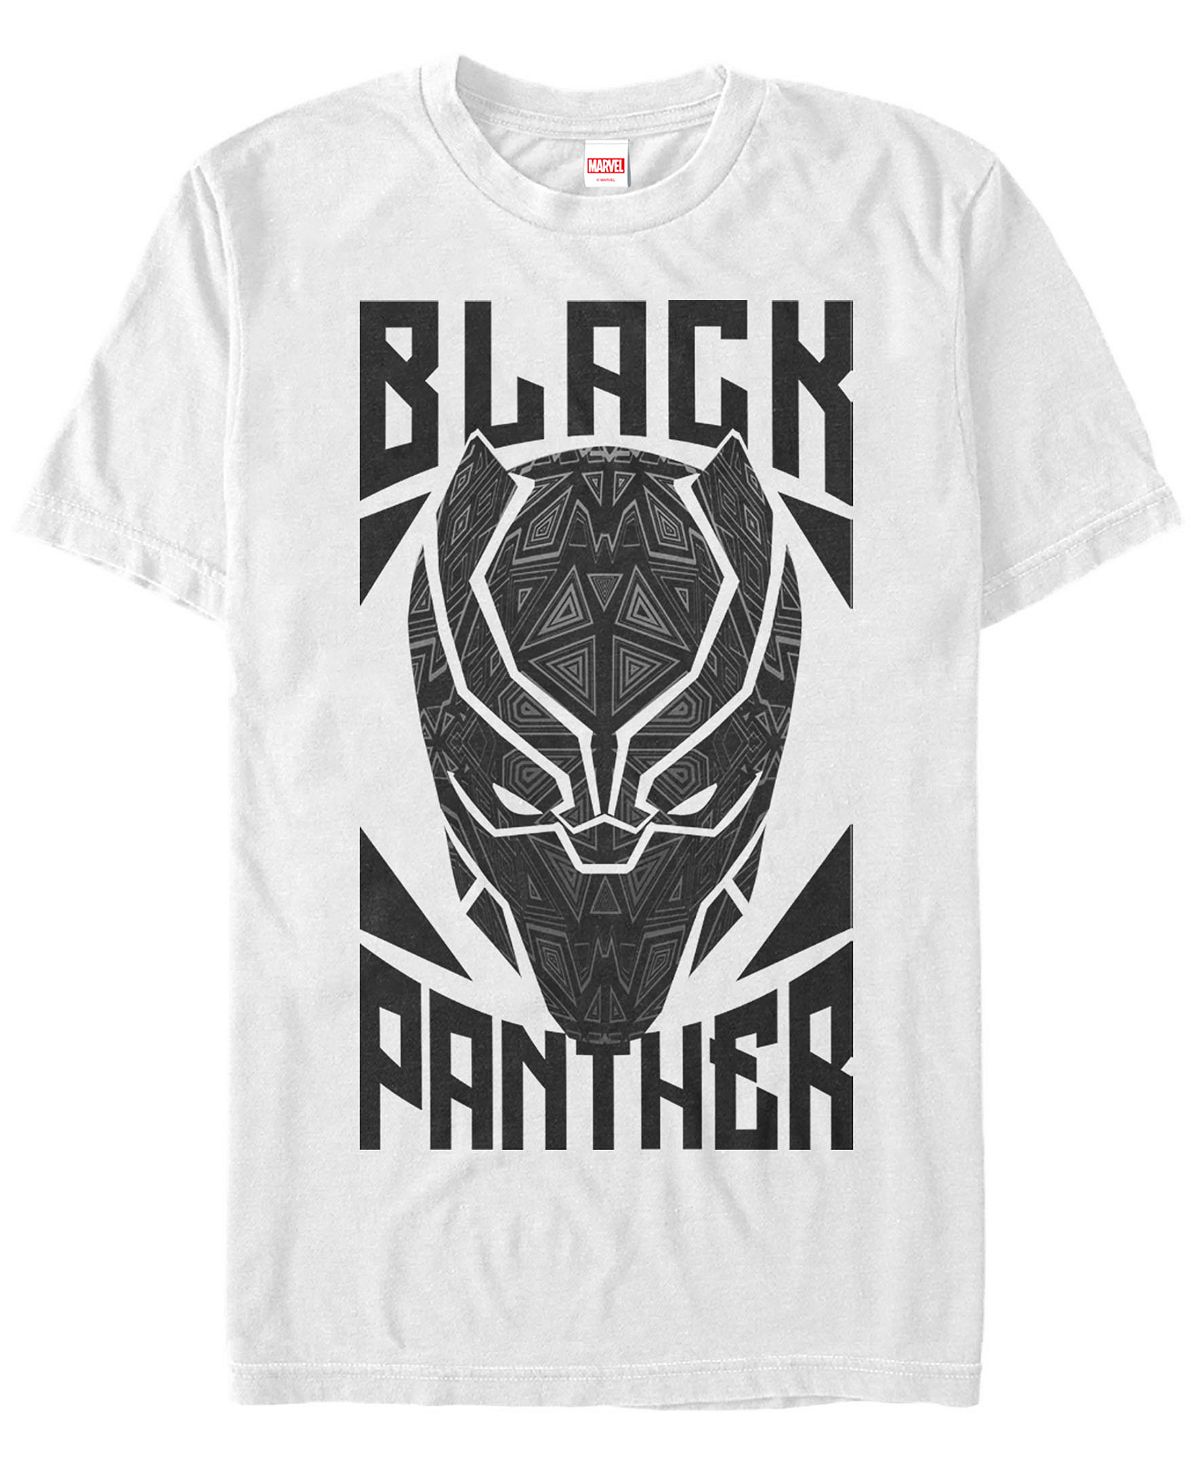 Черная пантера marvel, мужская геометрическая маска, футболка с коротким рукавом Fifth Sun, белый